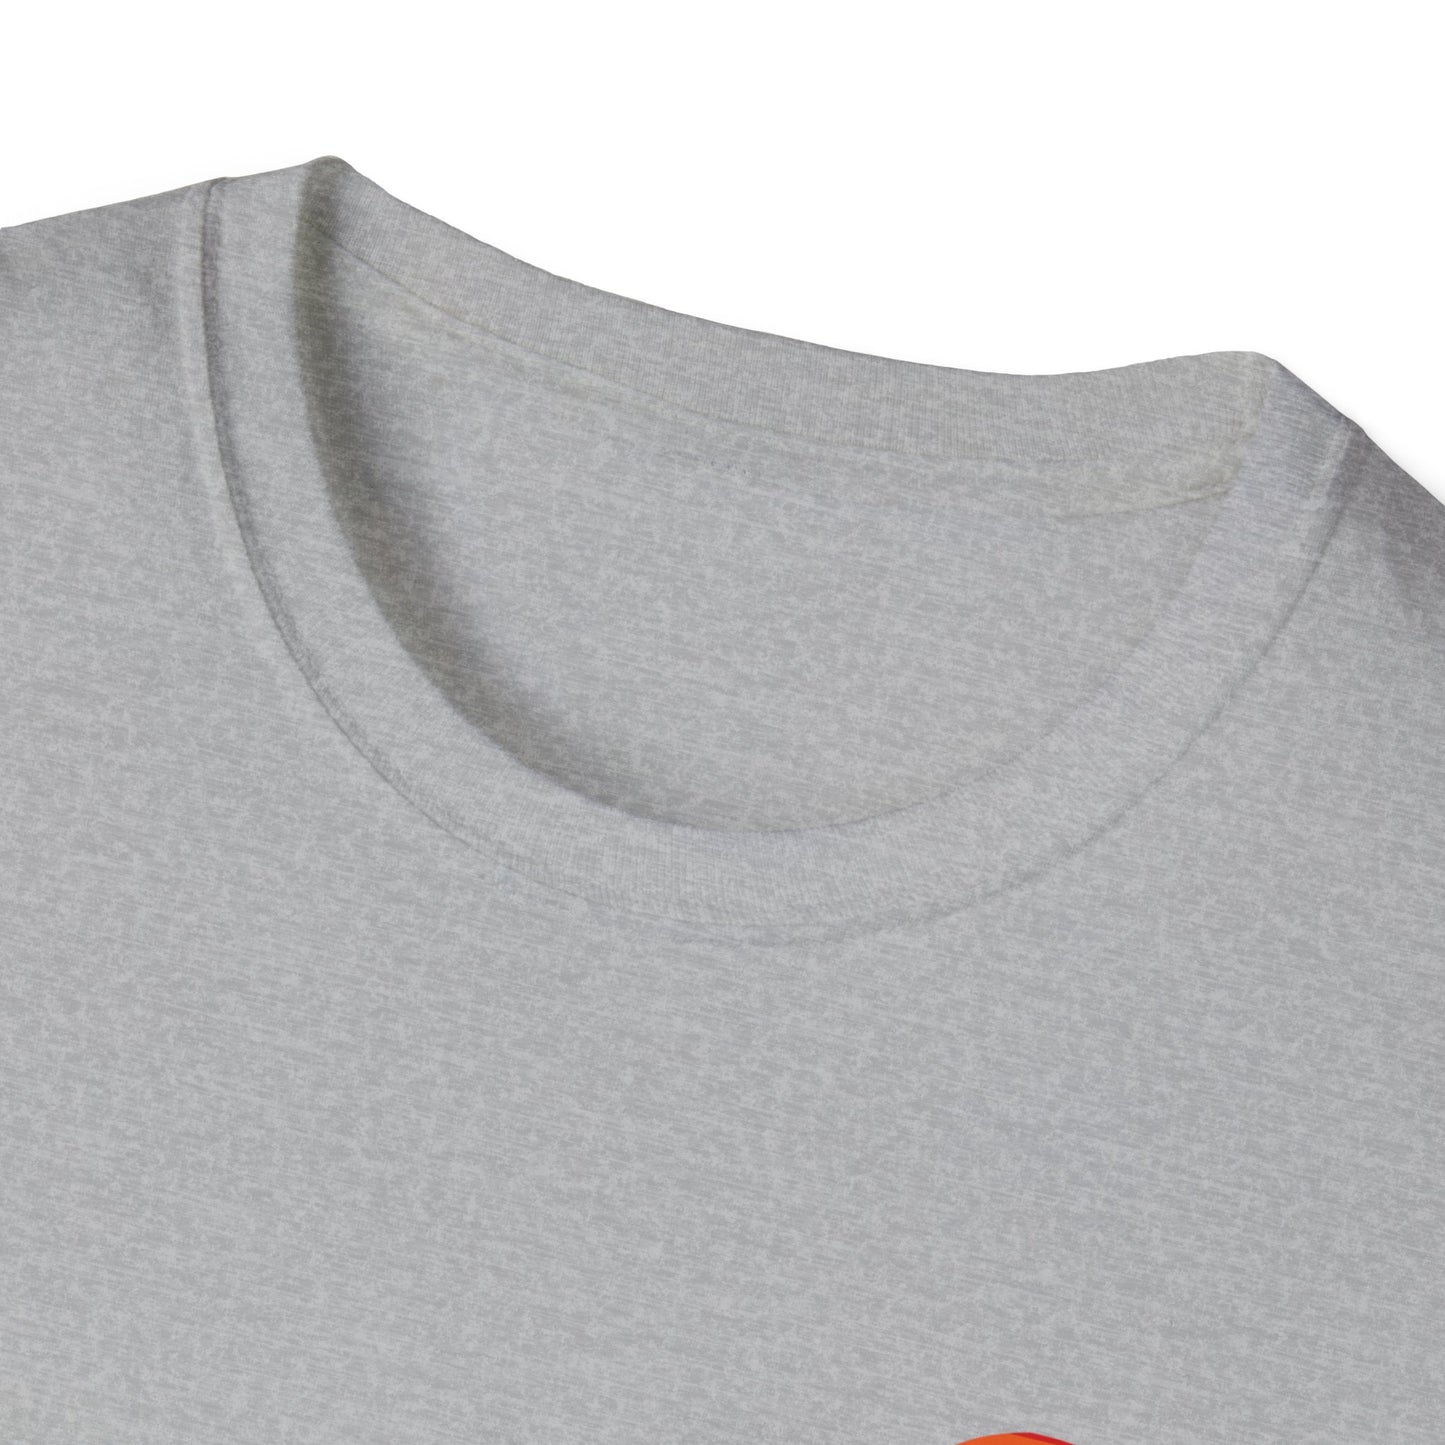 Bear Yellowstone Sunset Unisex Softstyle T-Shirt